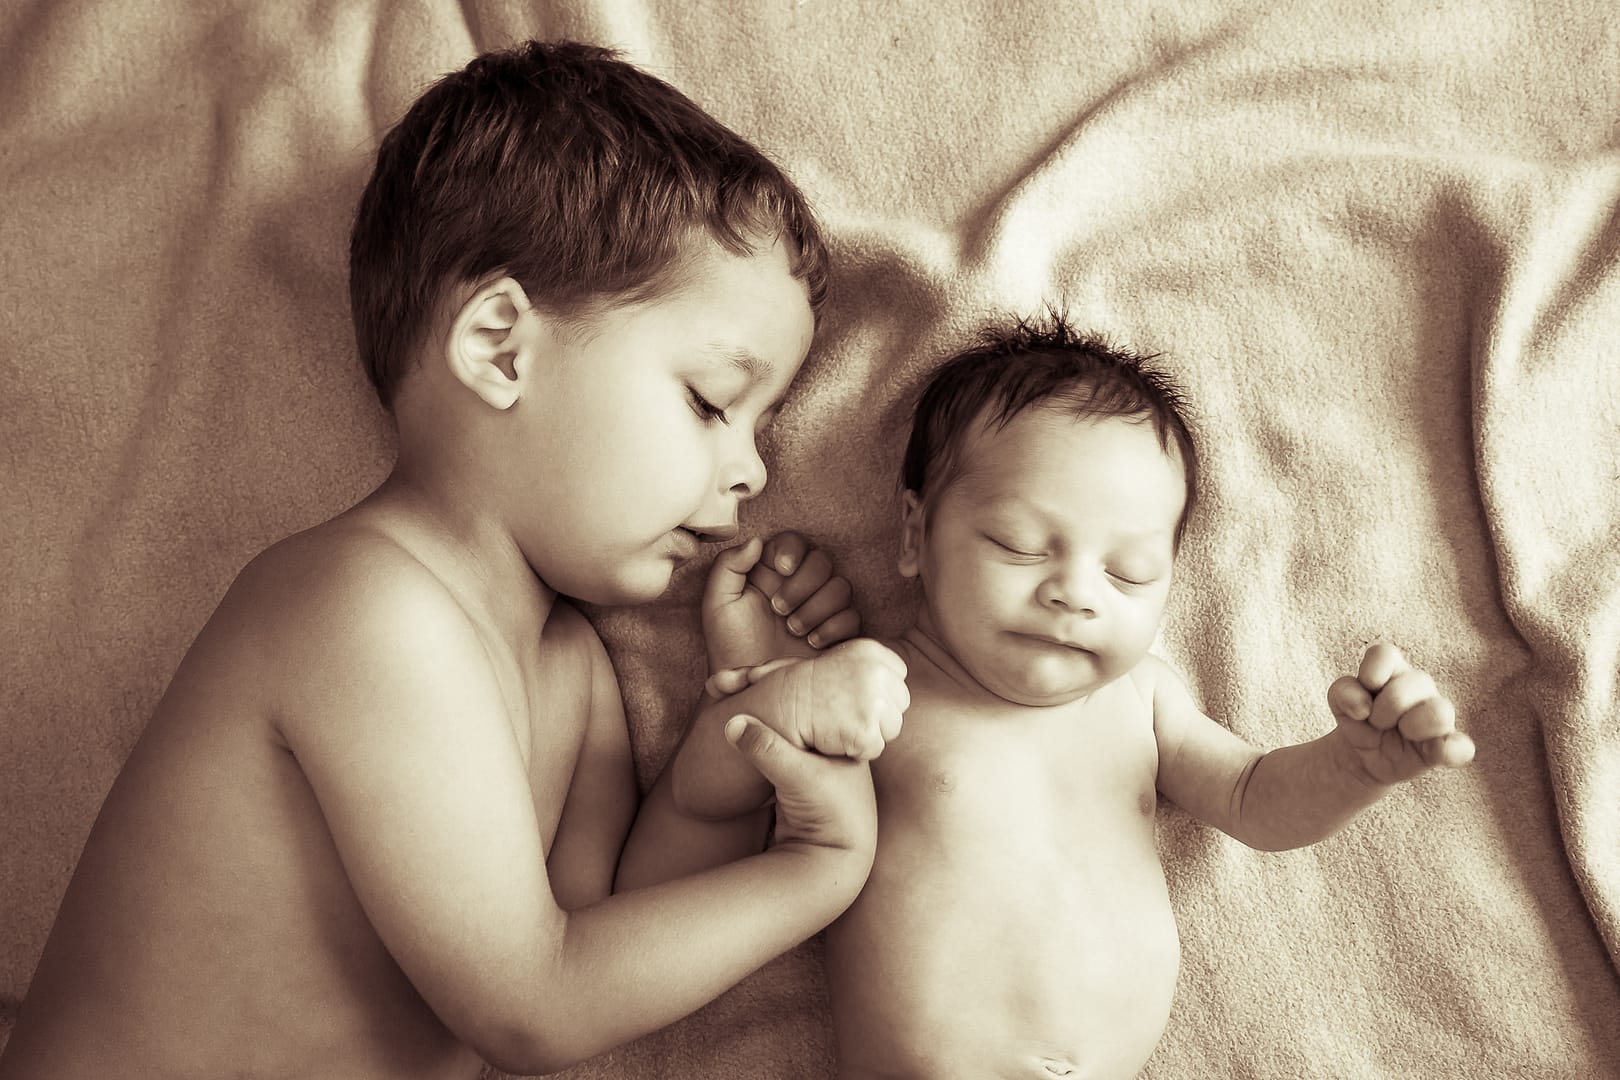 Kleinkind Baby liegend auf weichem Tuch mit Brüderchen. Bruder berühr das Baby. Schwarz-weiß-Foto